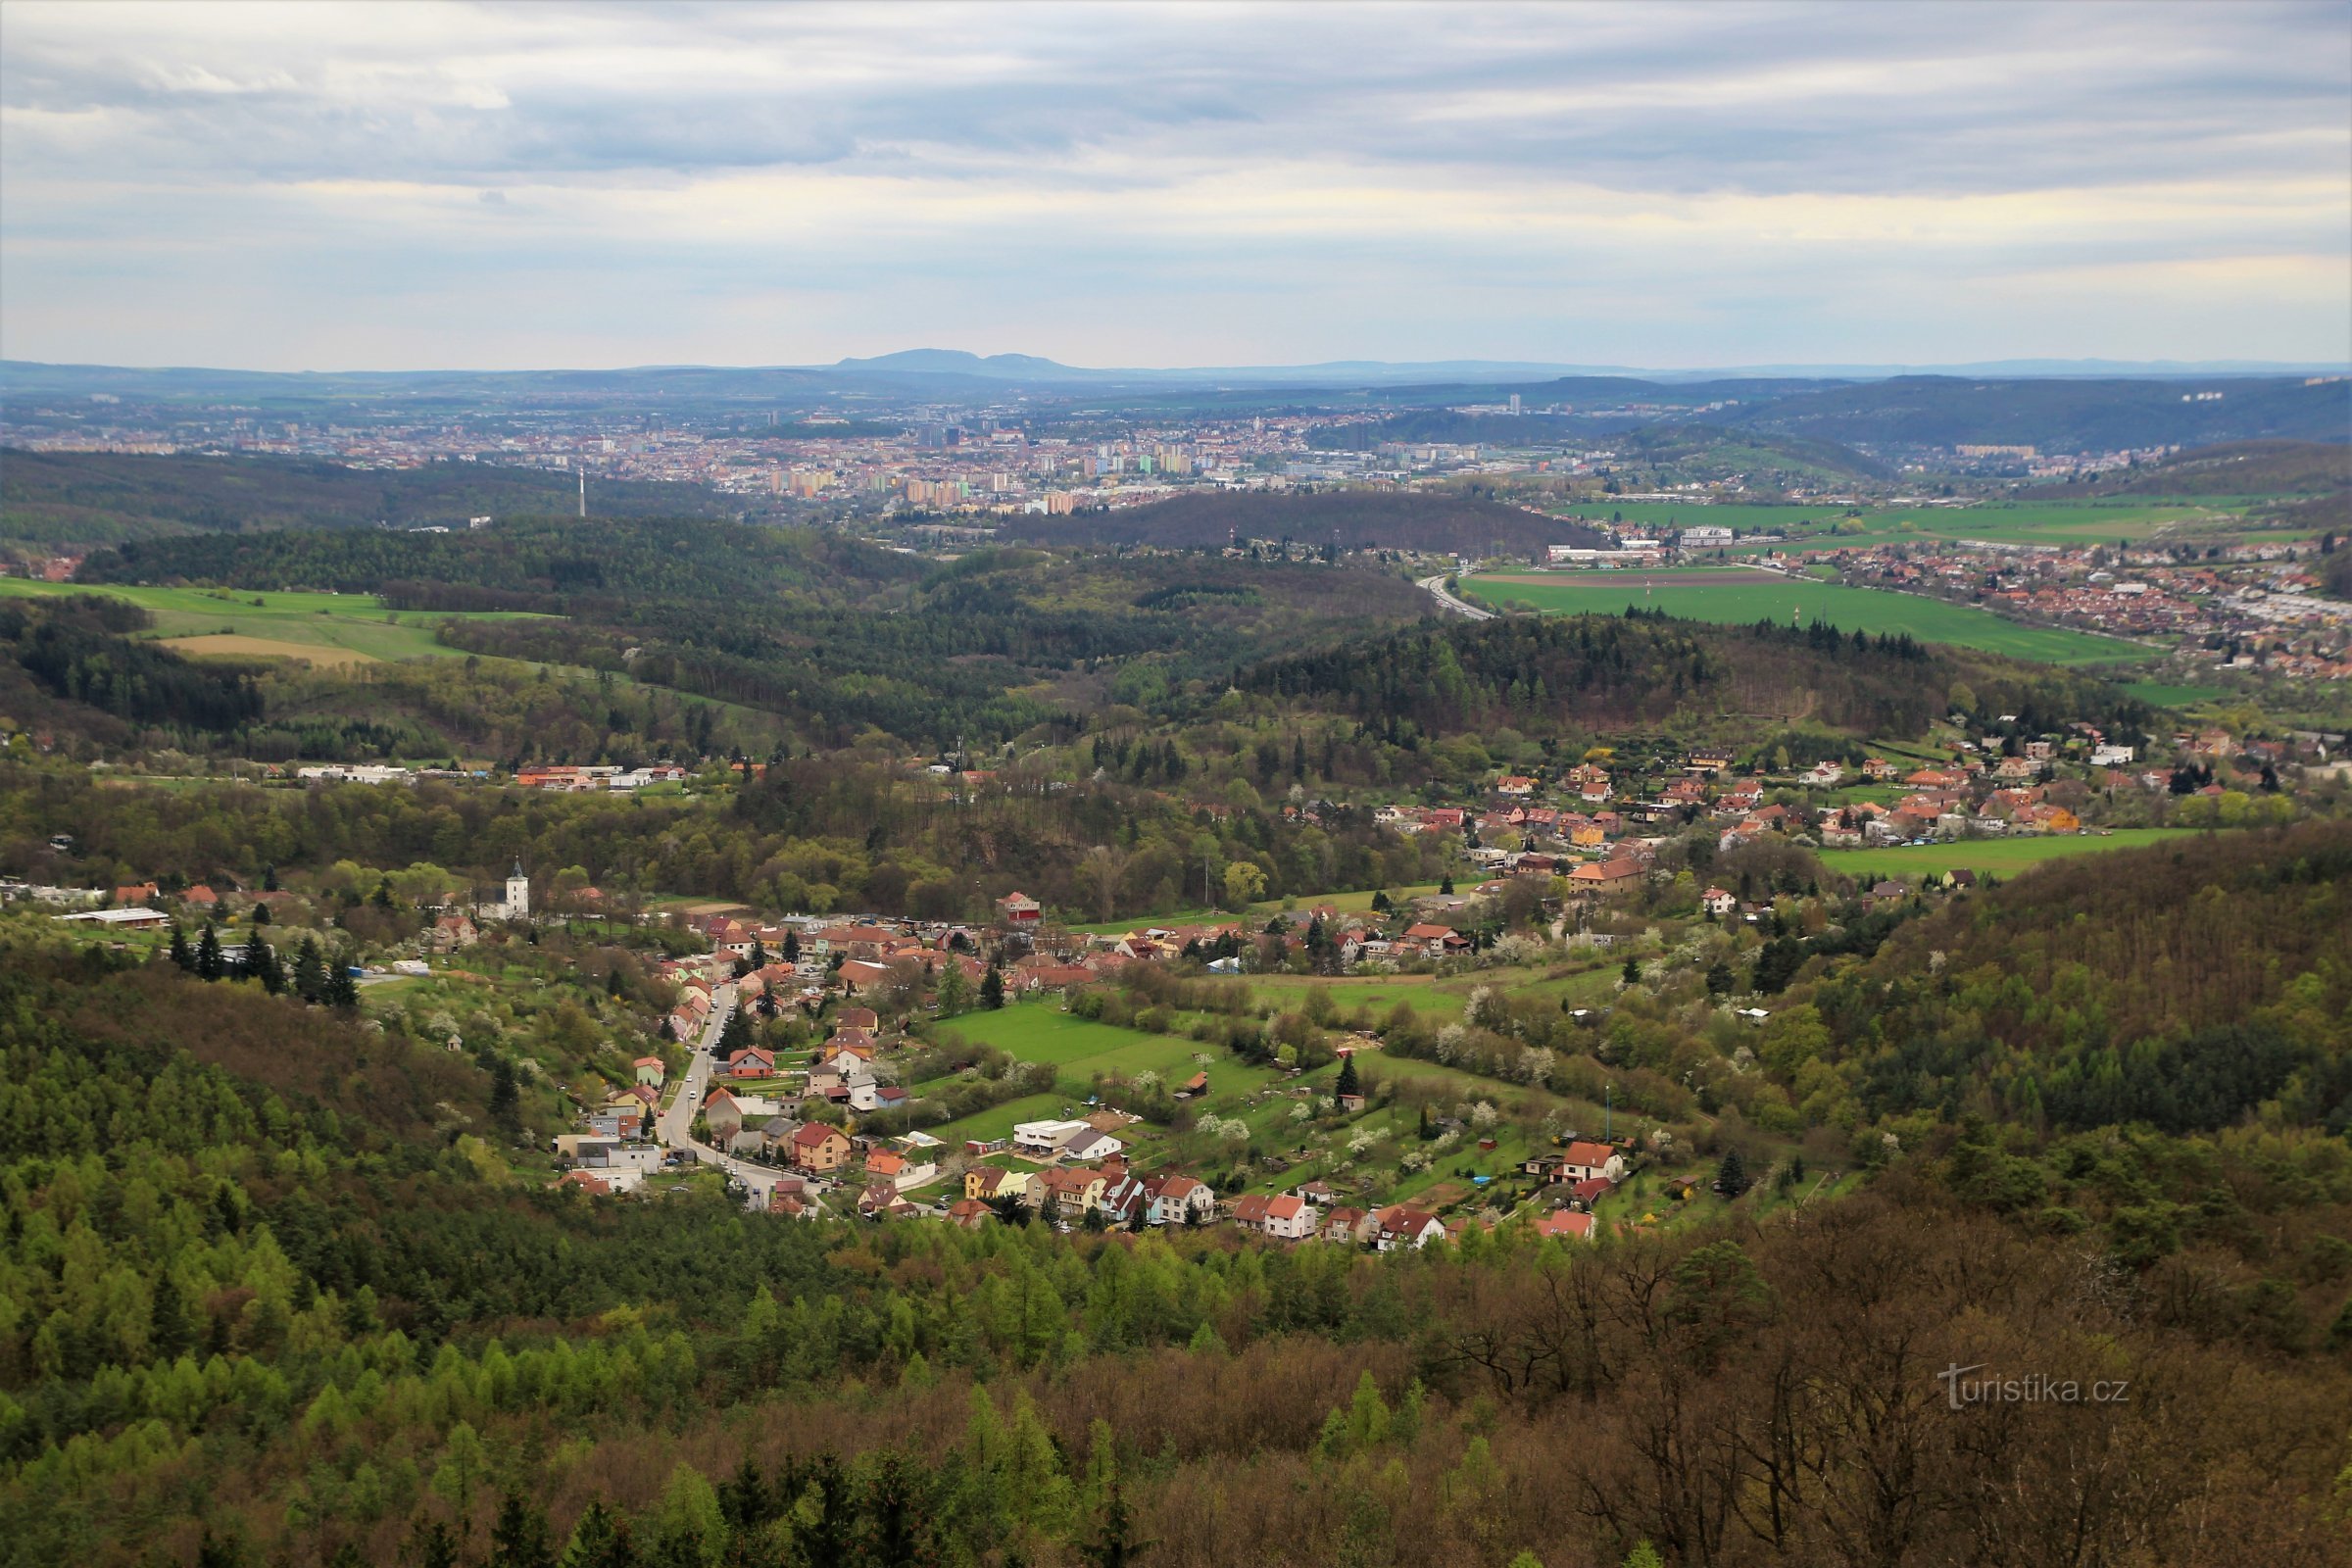 Vedere spre Brno, în prim plan se află Lelekovice, în fundal creasta Pálava la orizont